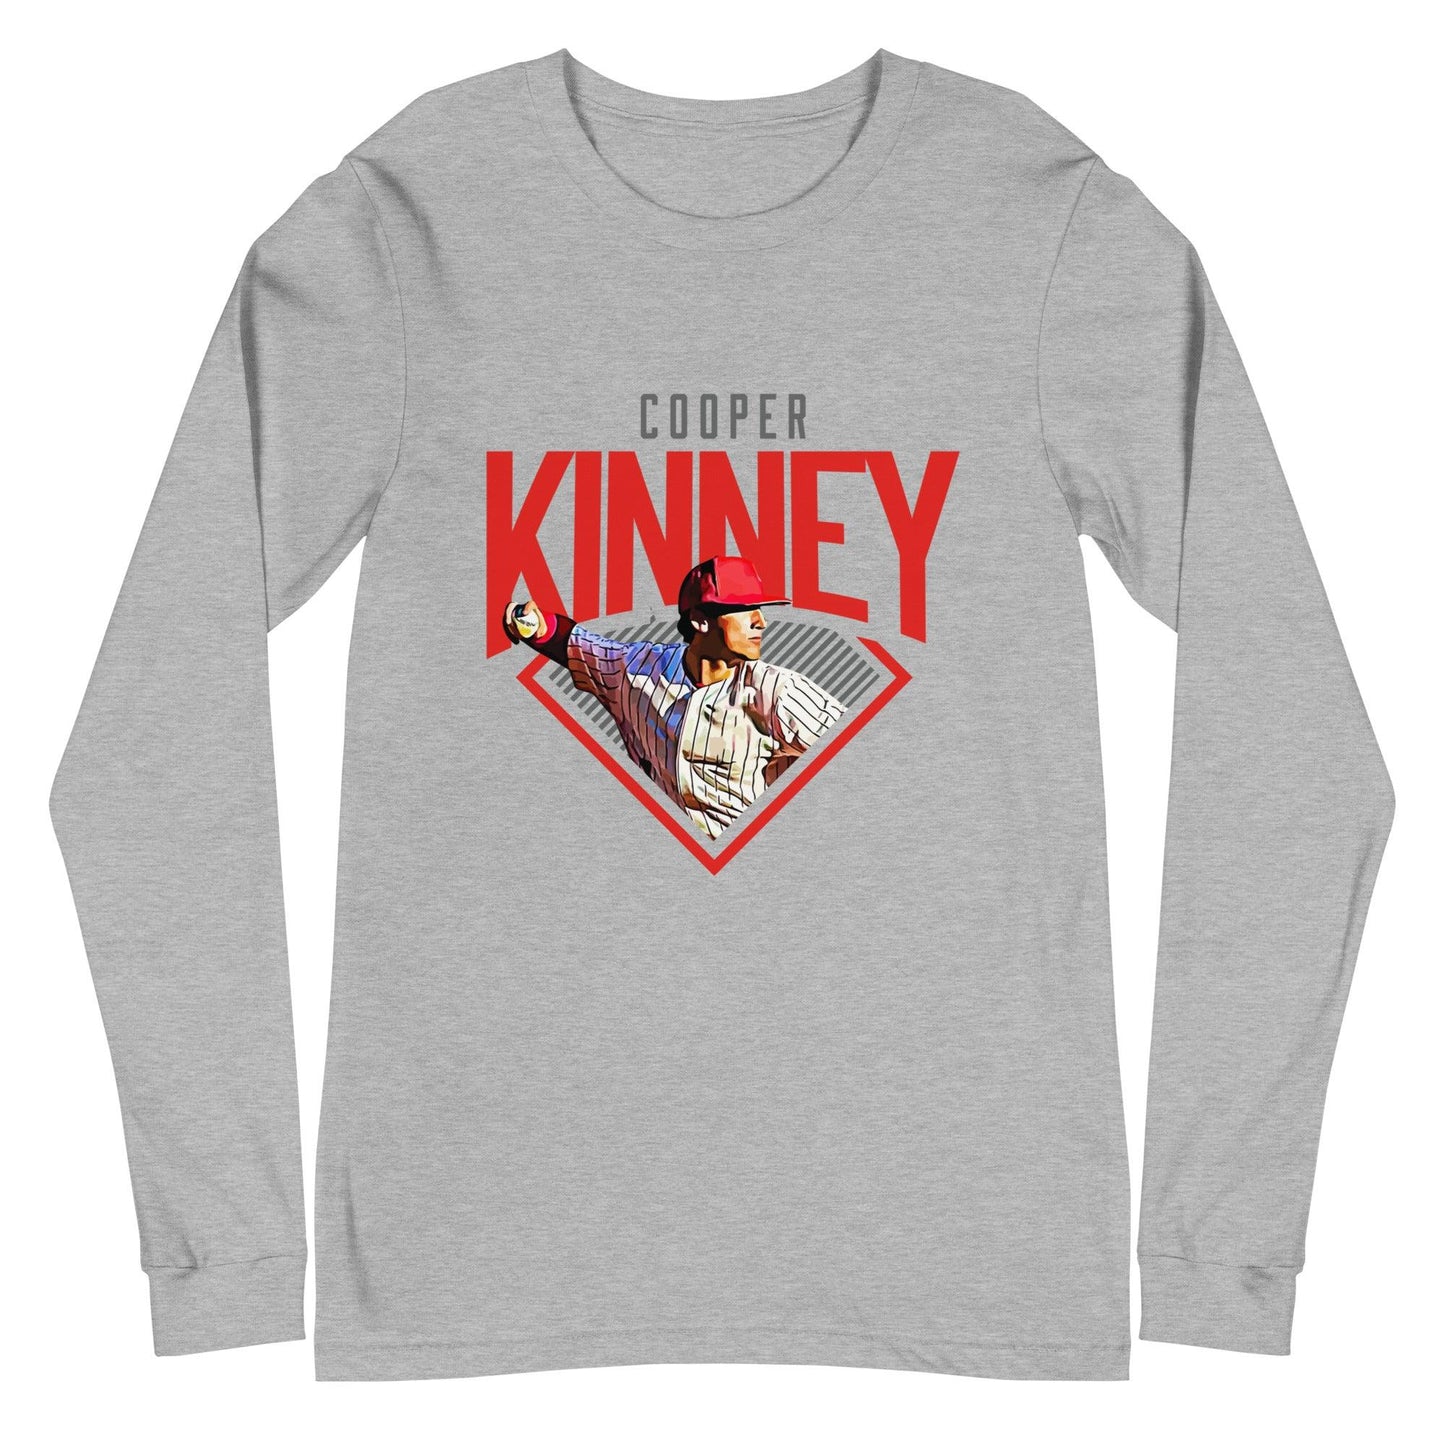 Cooper Kinney "Diamond" Long Sleeve Tee - Fan Arch